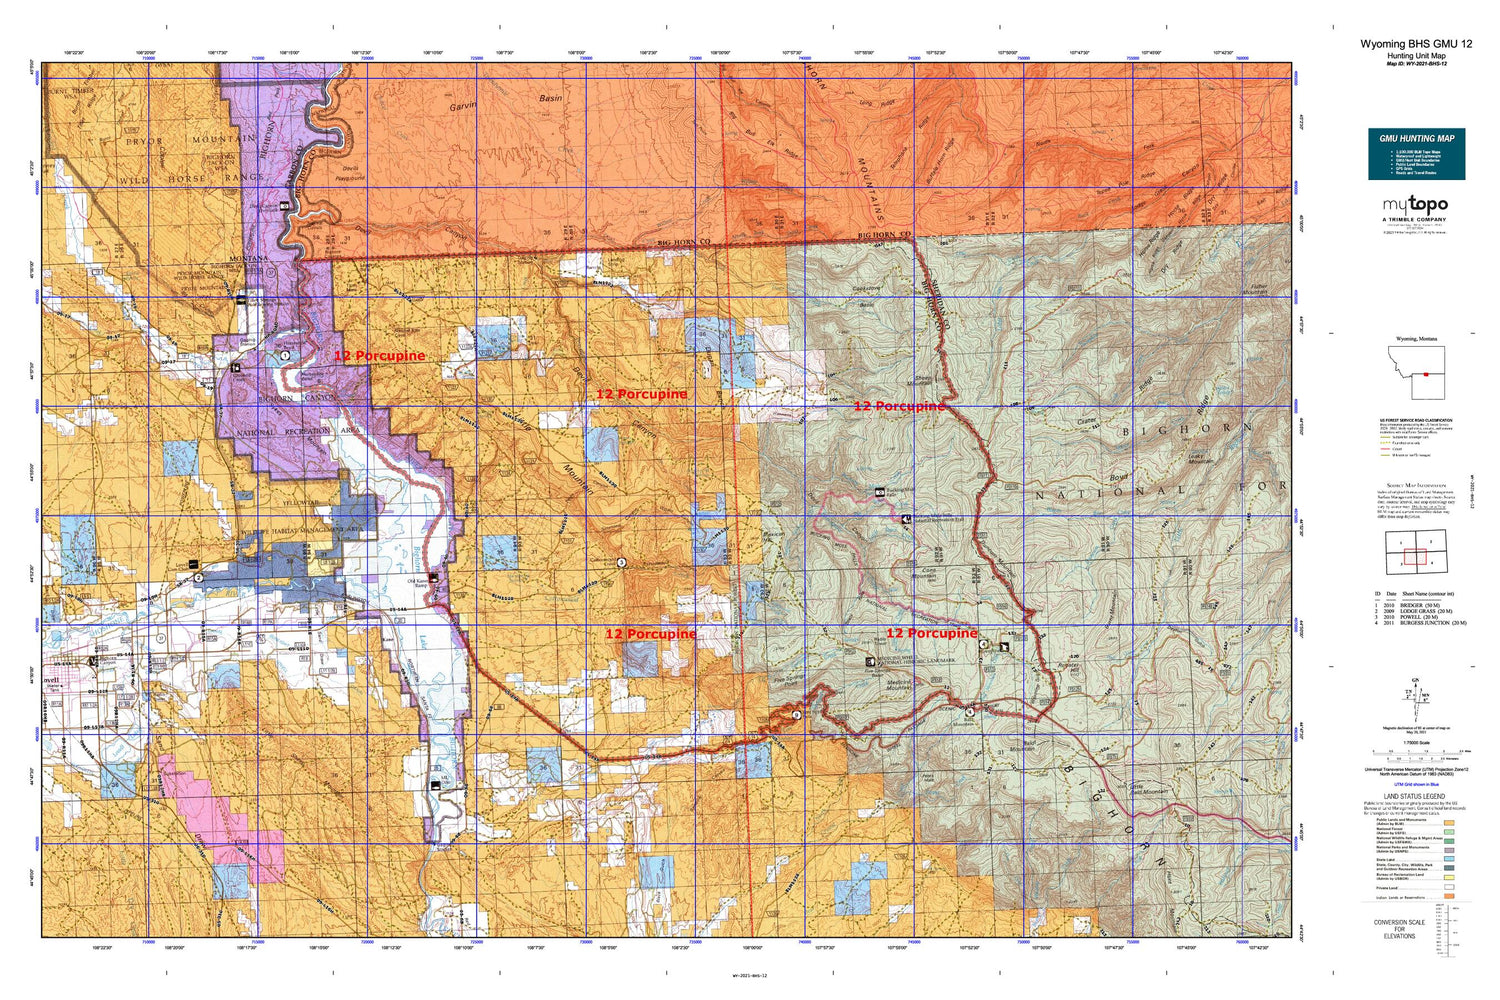 Wyoming Bighorn Sheep GMU 12 Map Image